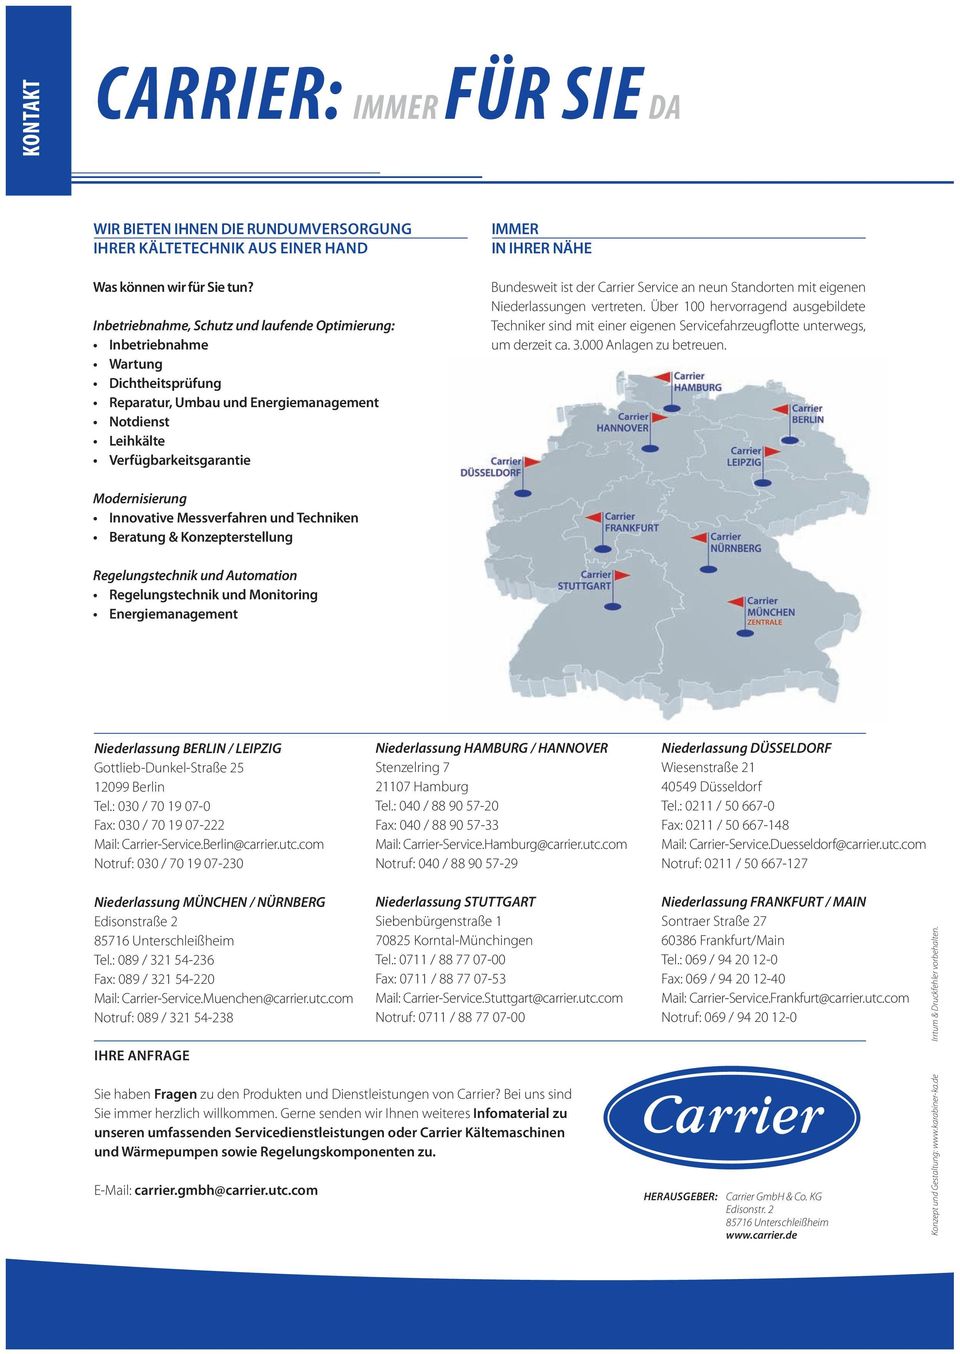 Bundesweit ist der Carrier Service an neun Standorten mit eigenen Niederlassungen vertreten.